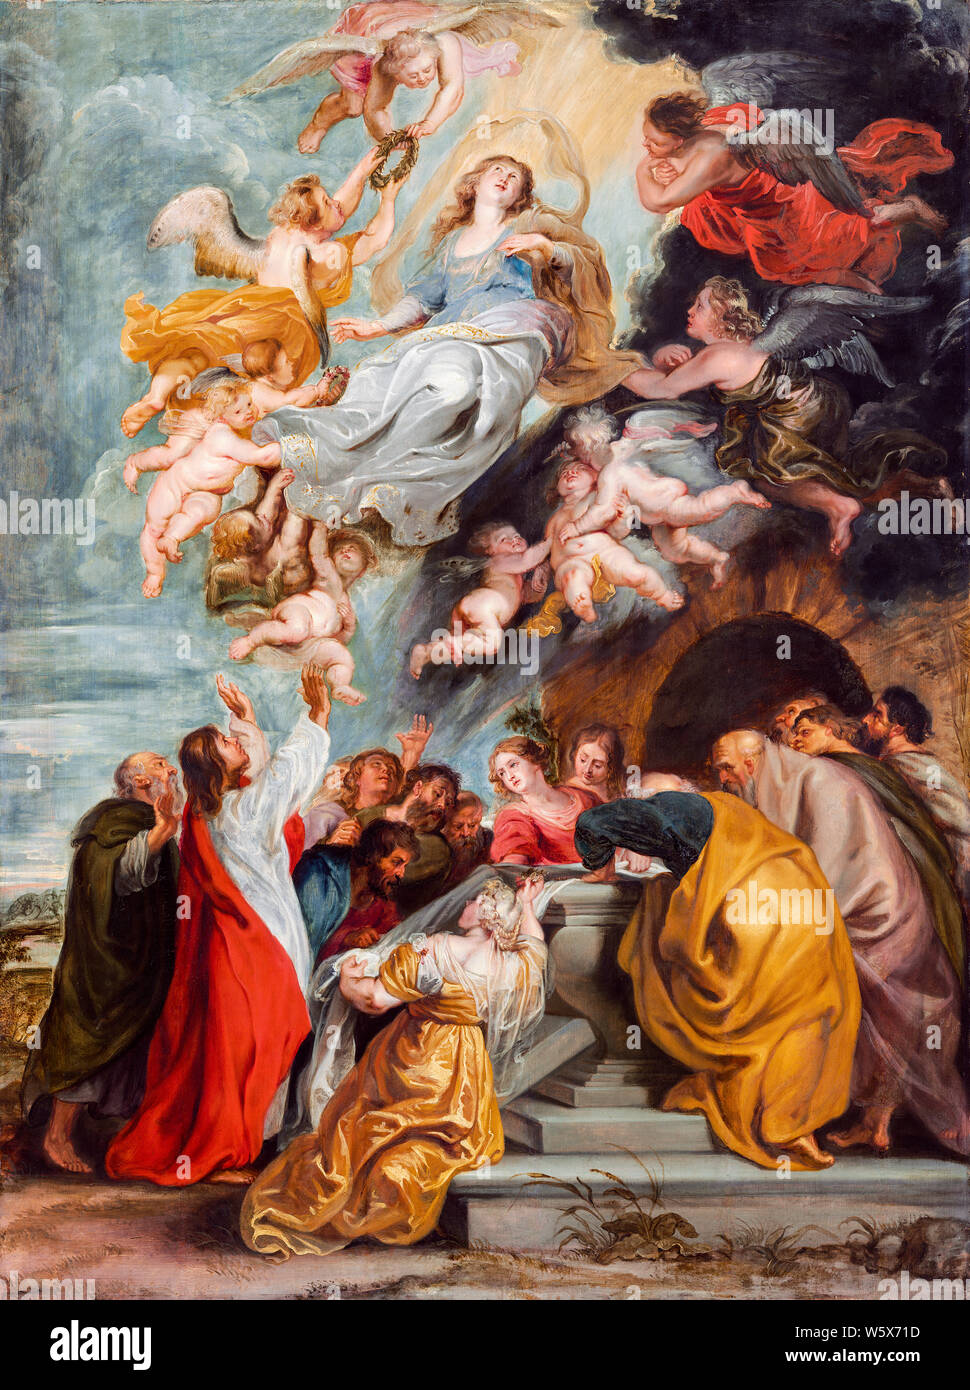 Peter Paul Rubens, l'Assomption de la Vierge Marie, peinture, 1620-1630 Banque D'Images